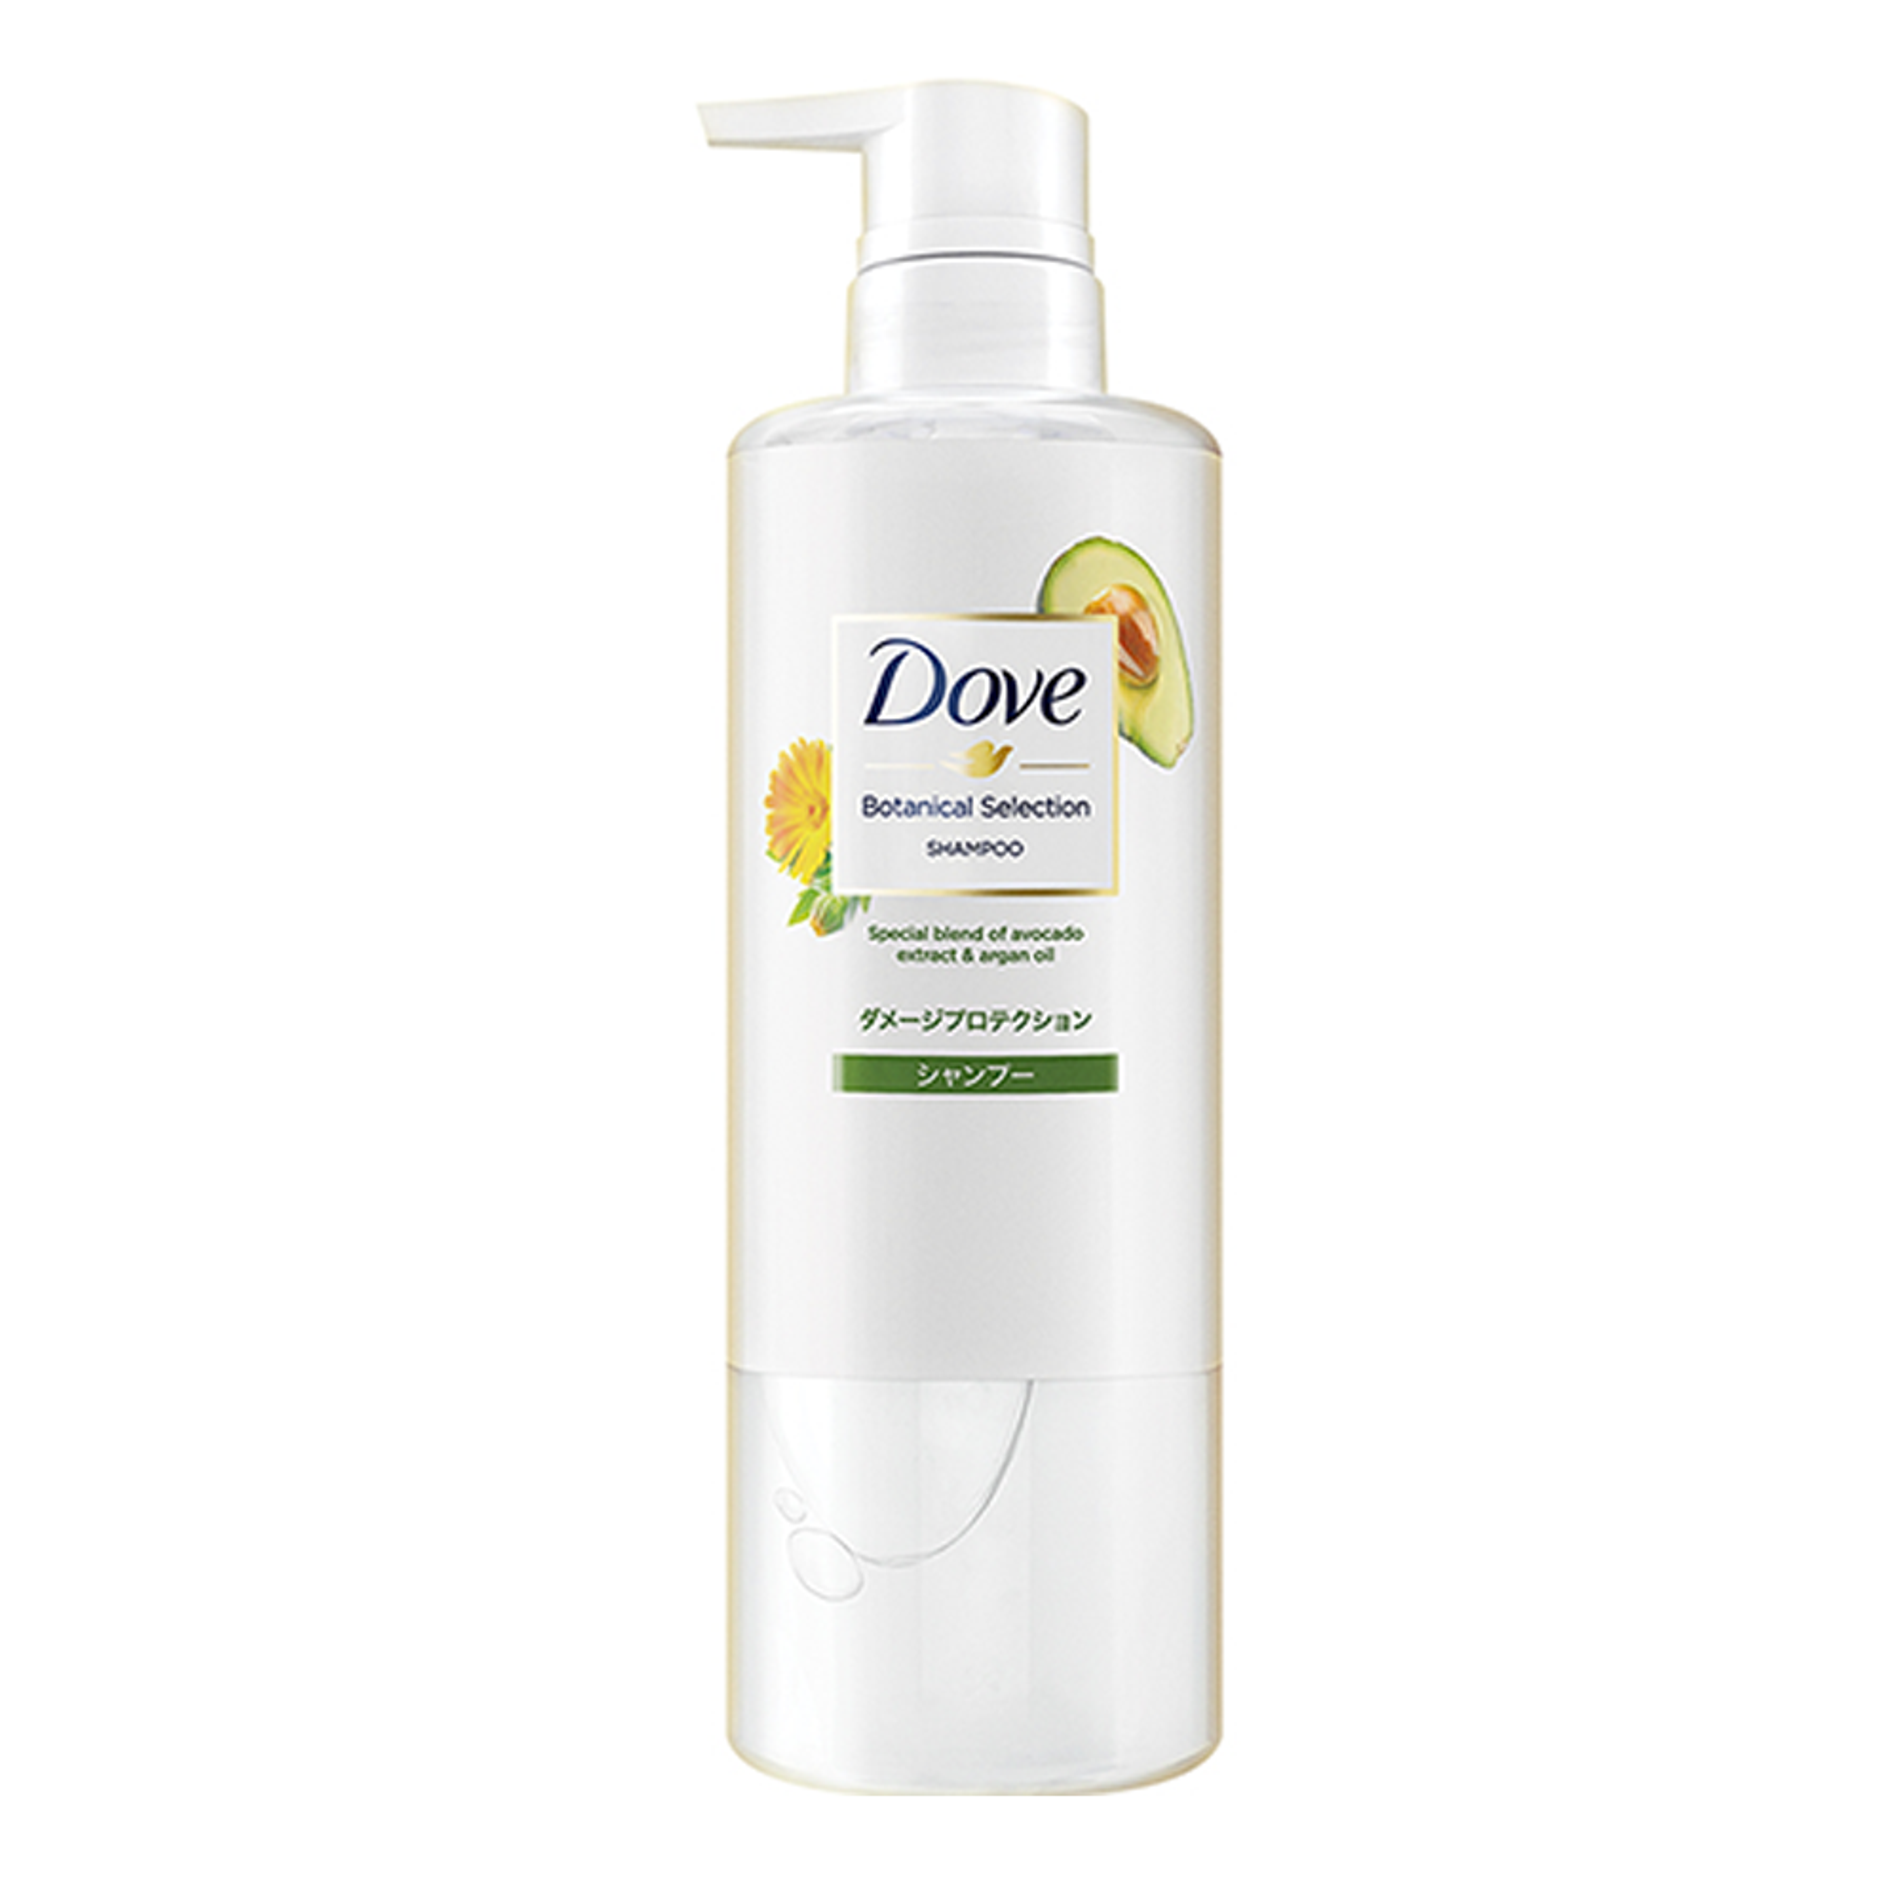 dau-goi-phuc-hoi-hu-ton-tu-bo-va-dau-argan-dove-botanical-selection-shampoo-500g-2